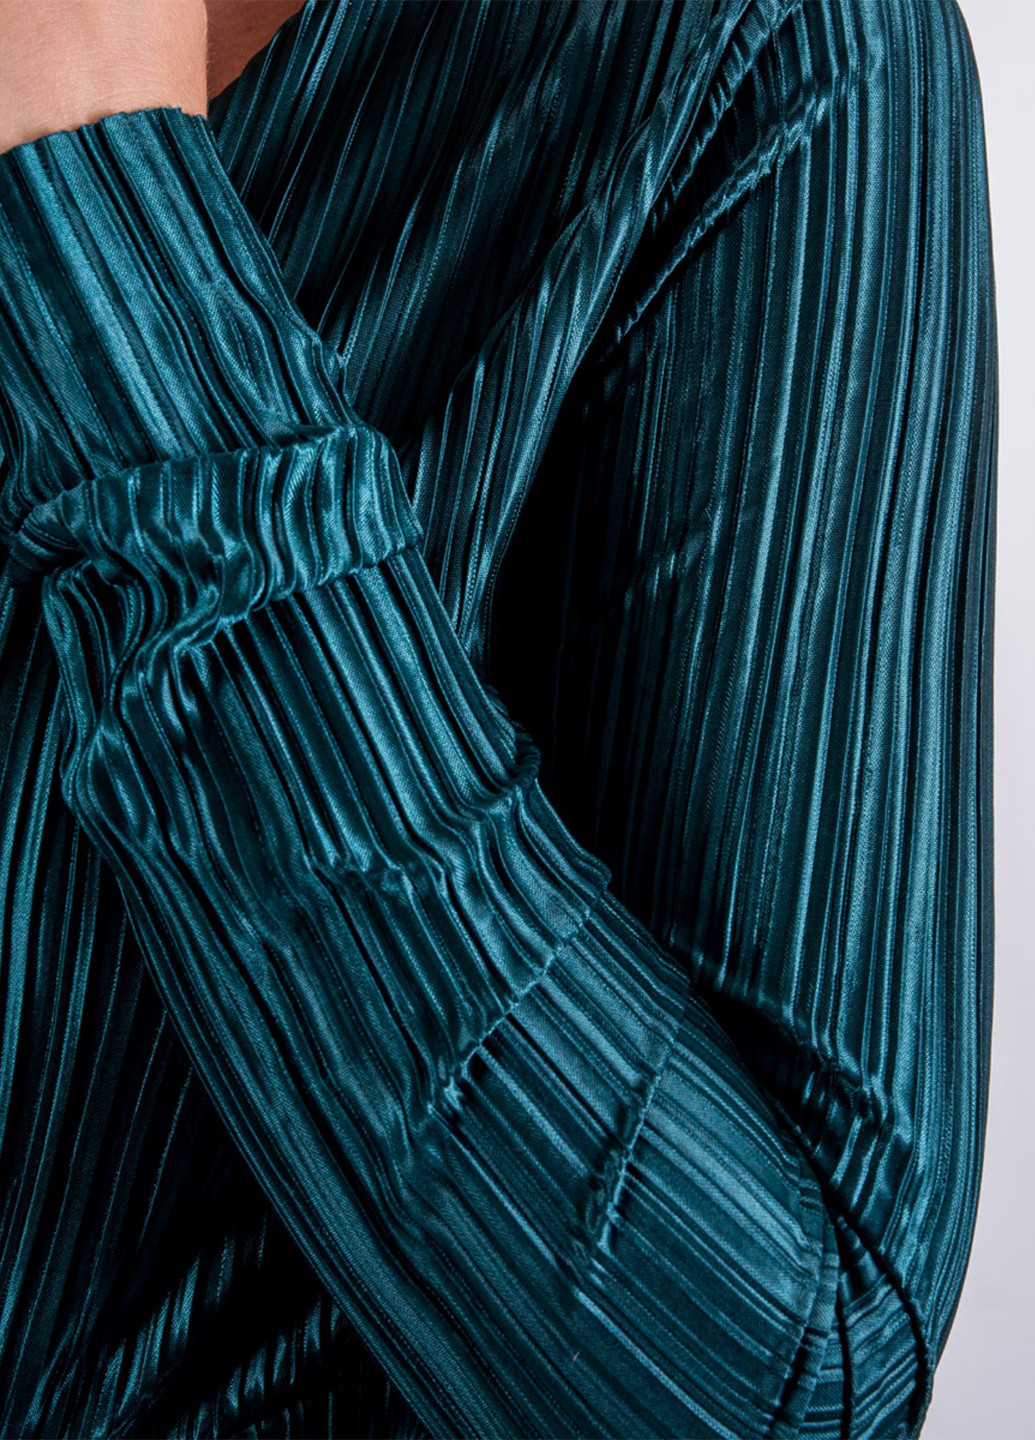 Комбинезон Rut & Circle комбинезон-брюки однотонный изумрудный деловой трикотаж, полиэстер